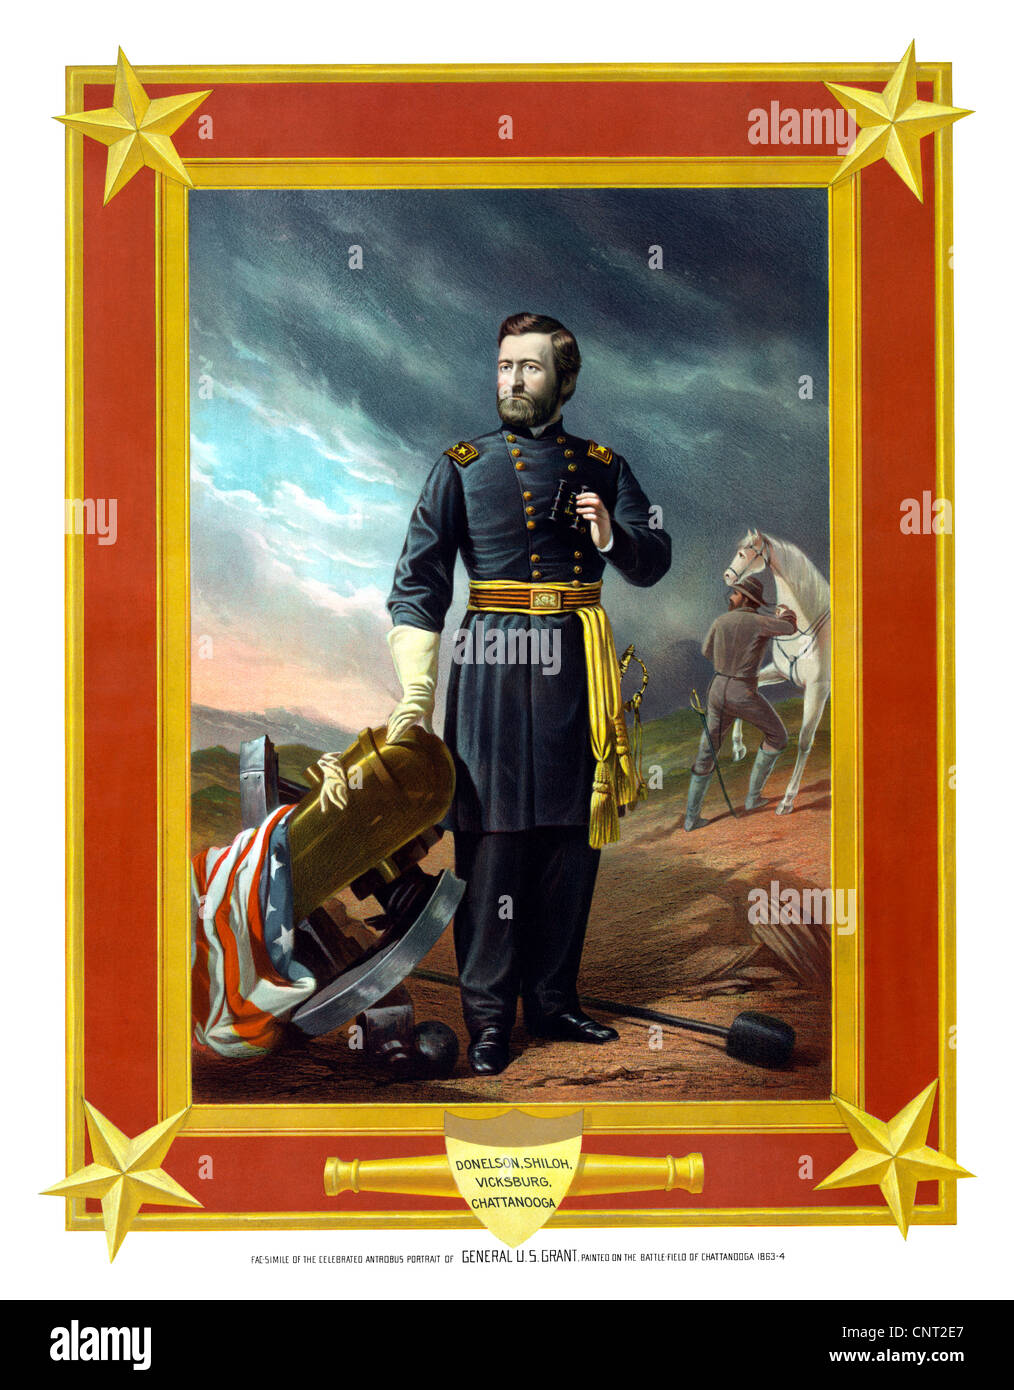 Guerre civile restaurés numériquement artwork du Général Ulysses S. Grant, peint sur le champ de bataille de Chattanooga 1863-64. Banque D'Images